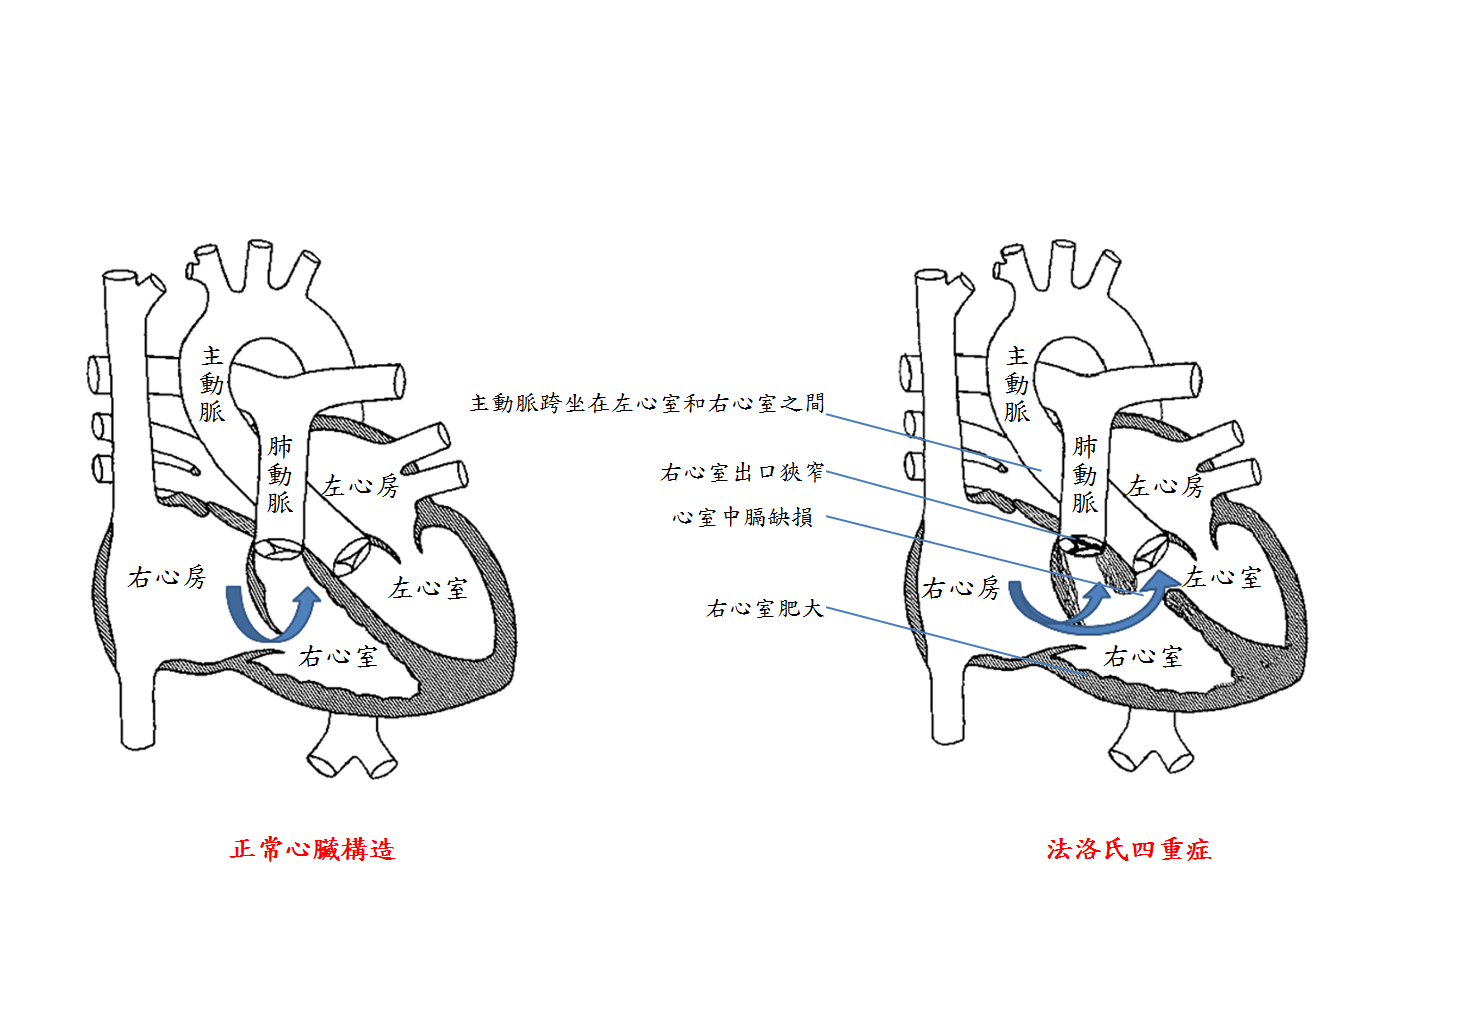 圖一正常心臓及法洛氏四重症結構示意比較，藍色箭頭是表示右心室內血液的流動方向